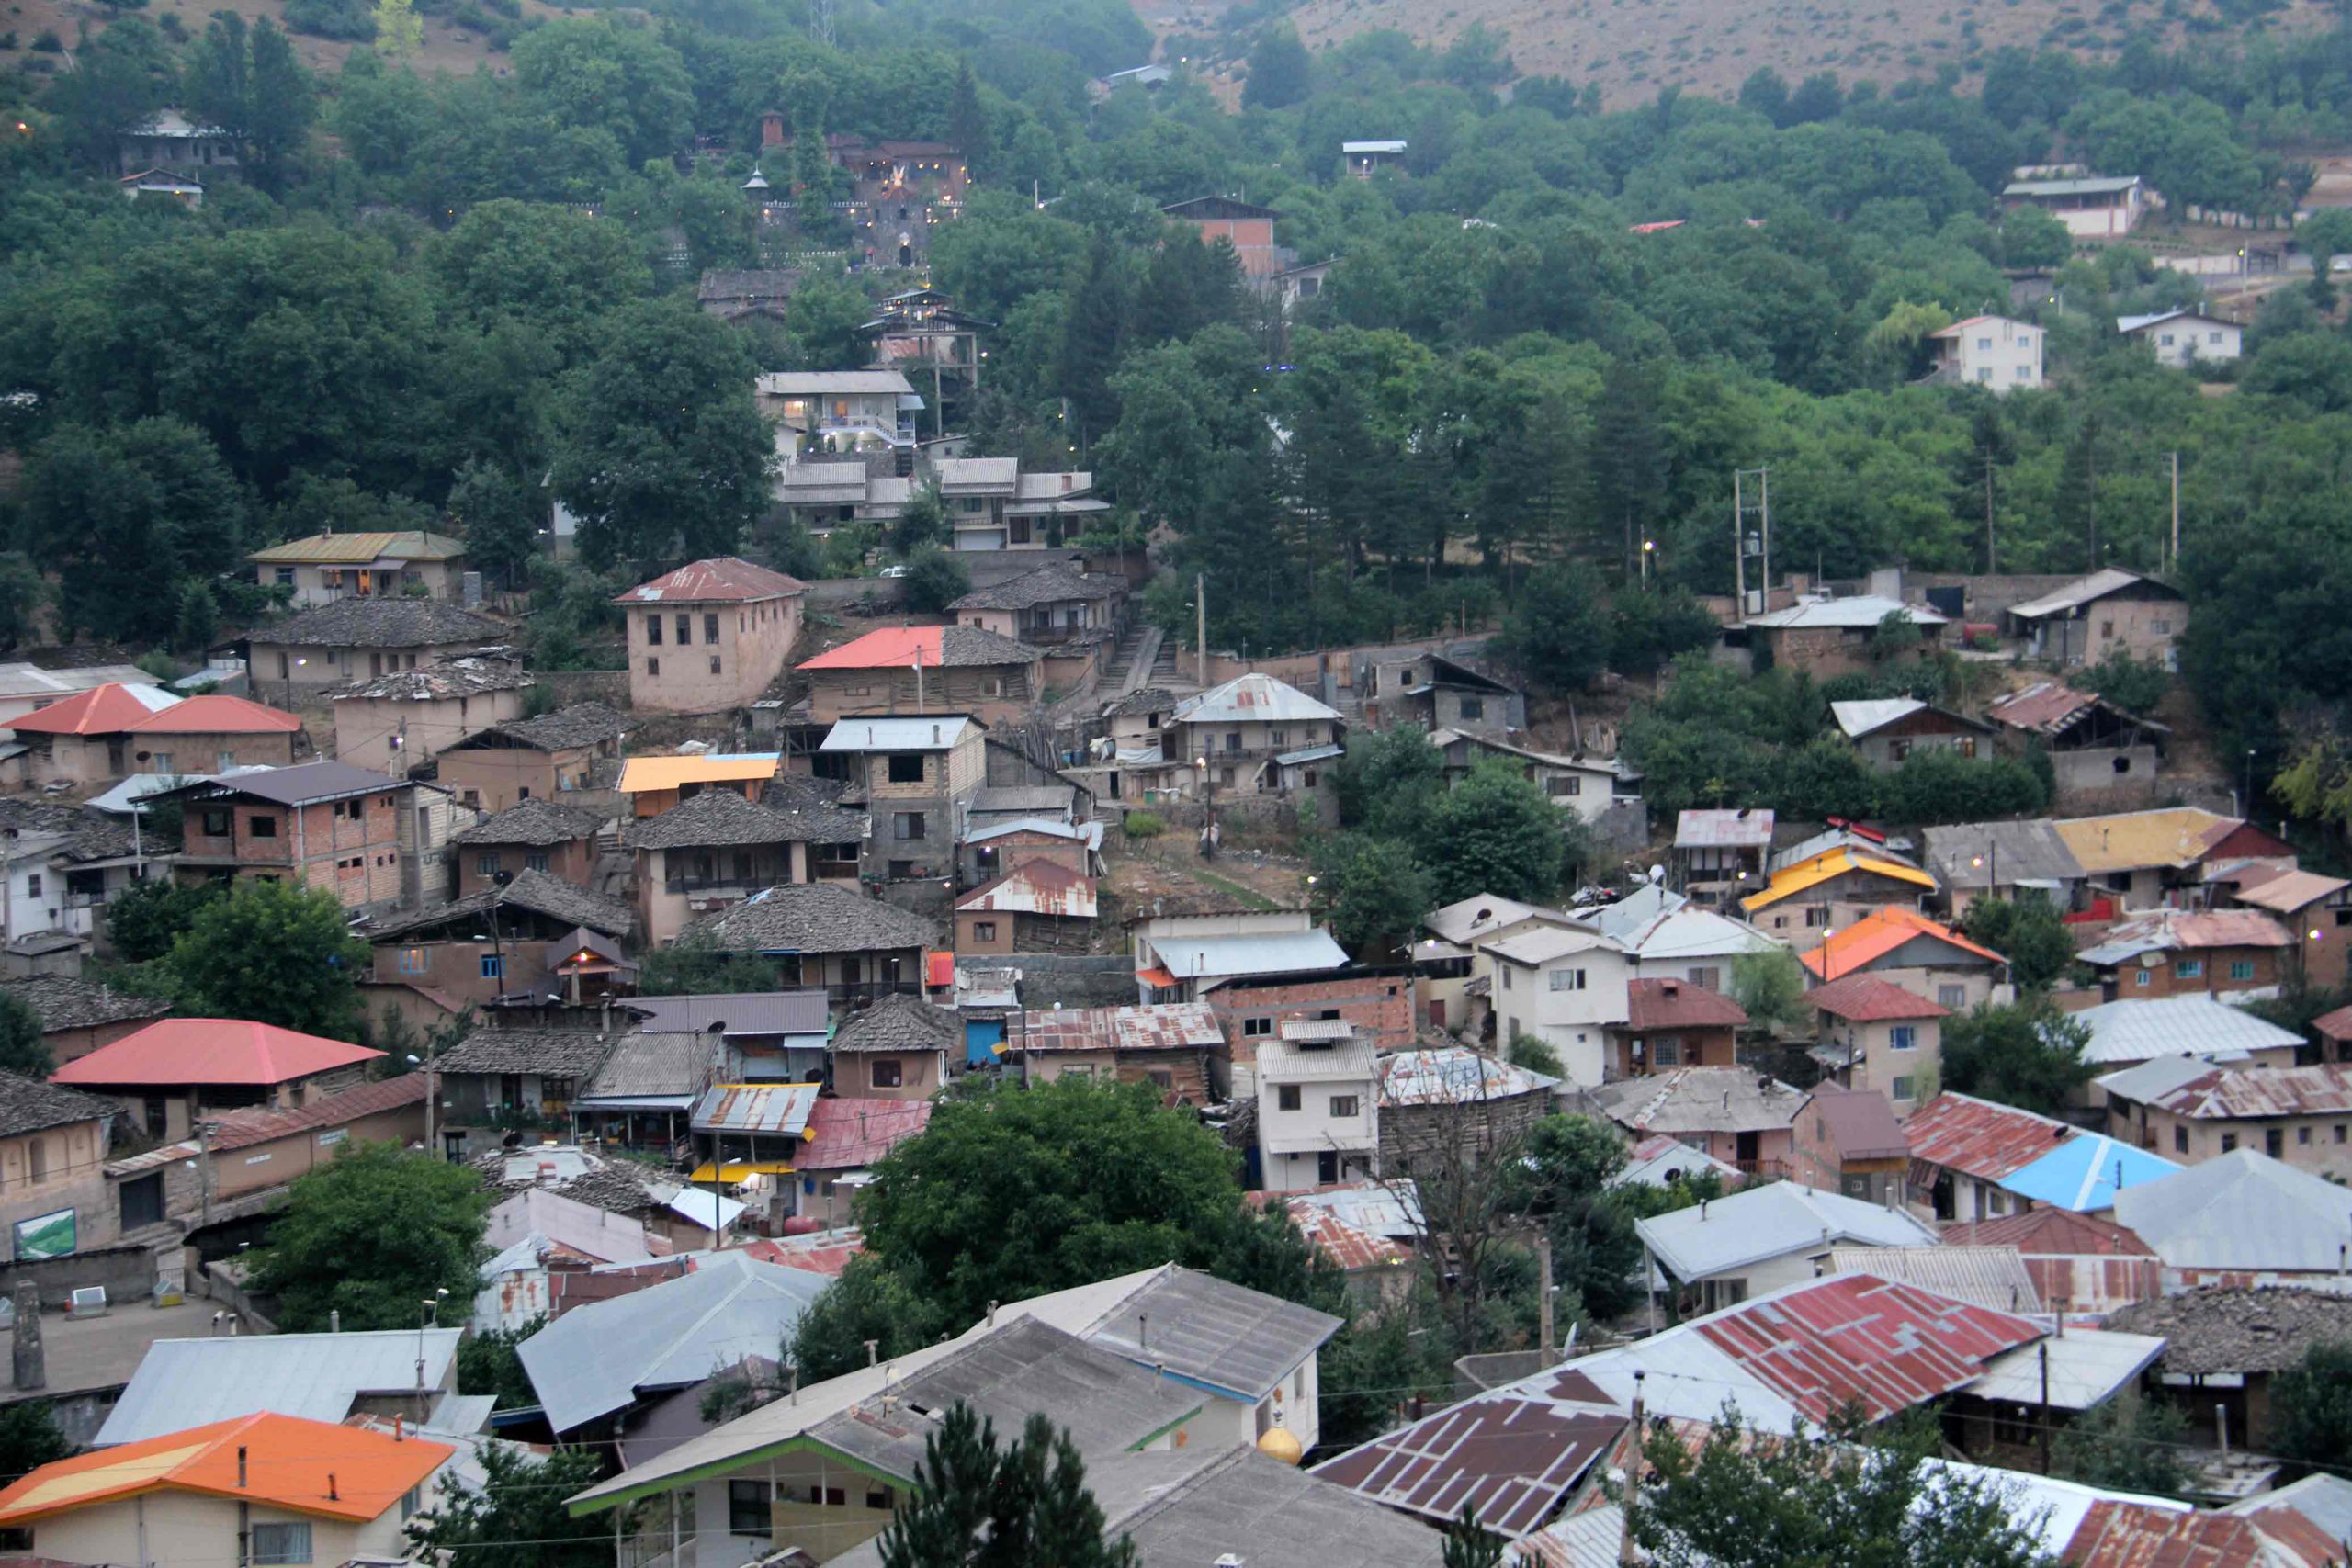 روستای کندلوس, Kandolus Village